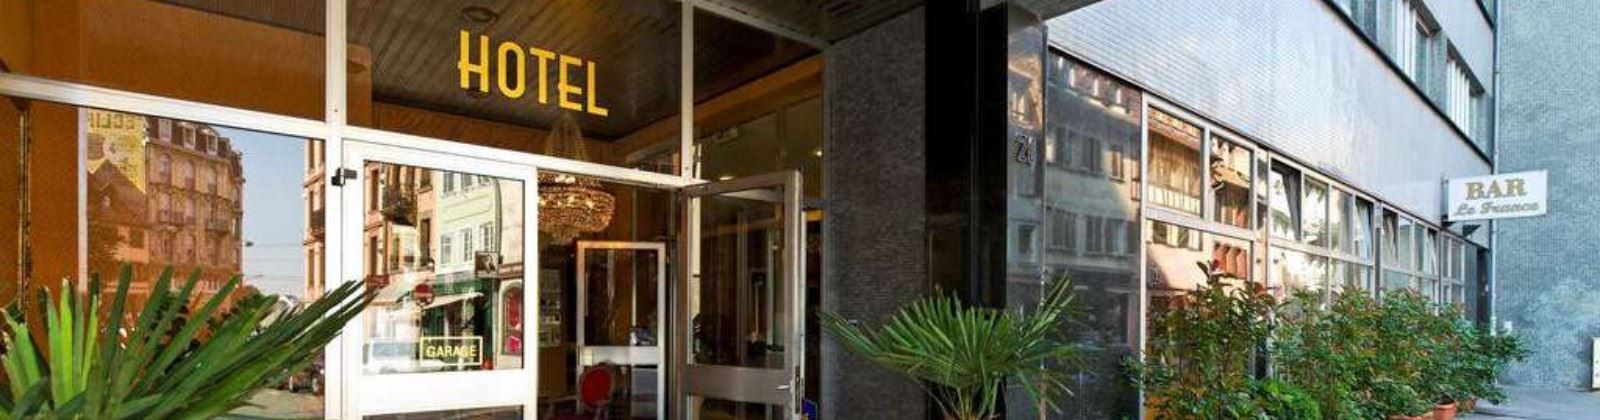 hotel de france olevene restaurant  